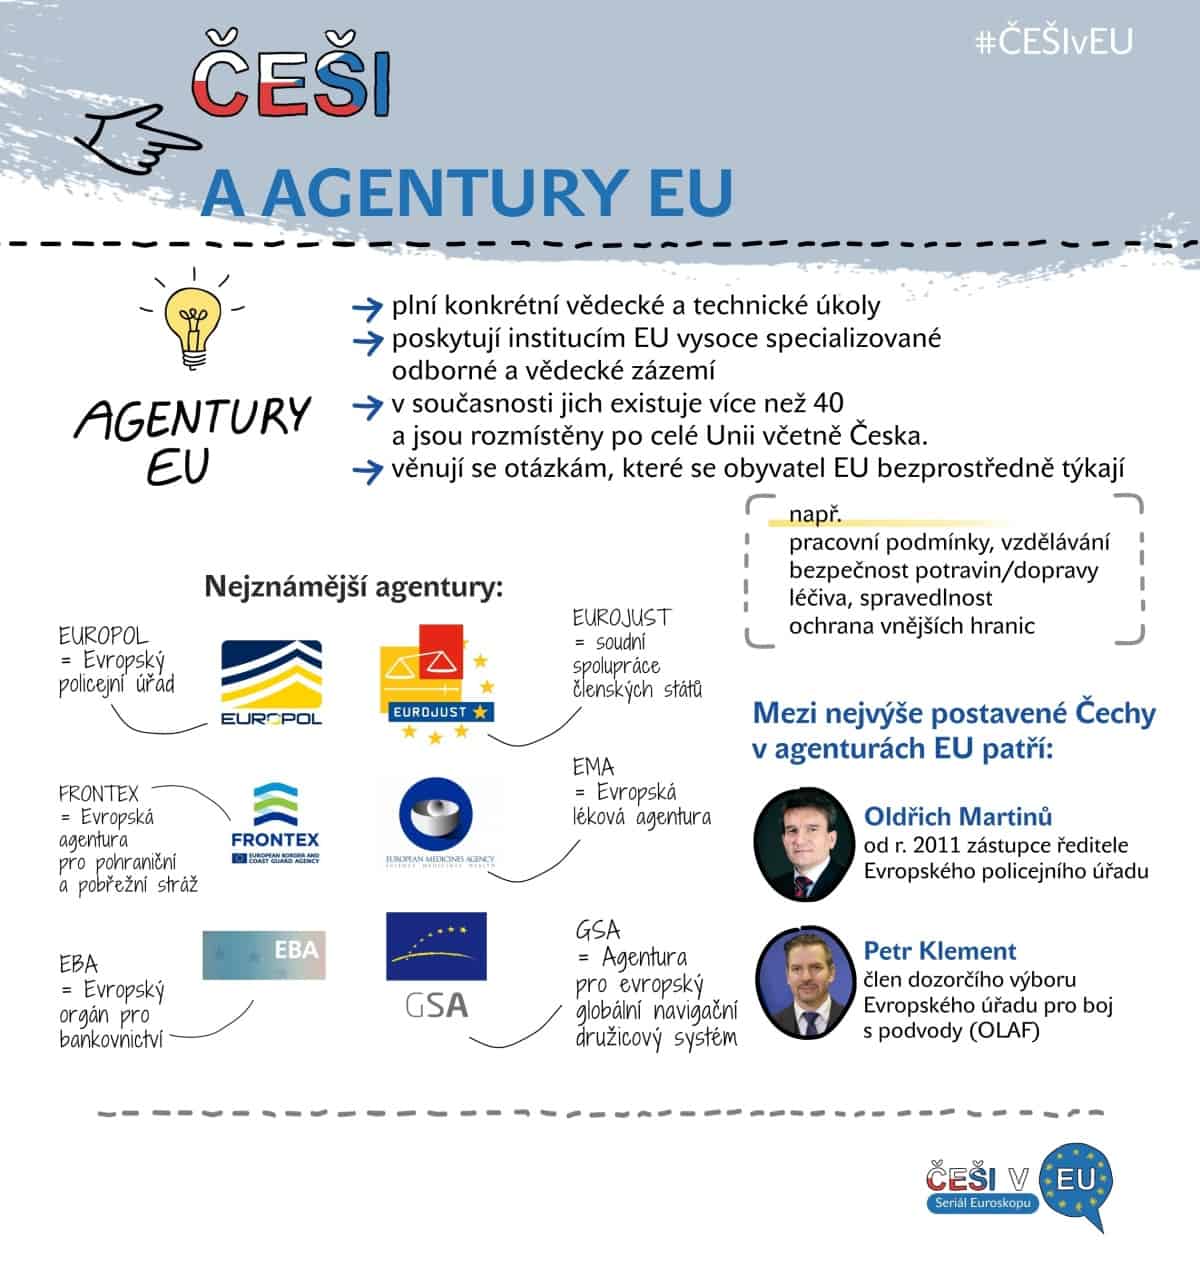 Češi v EU 5, infografika: Kristina Kvapilová 2019